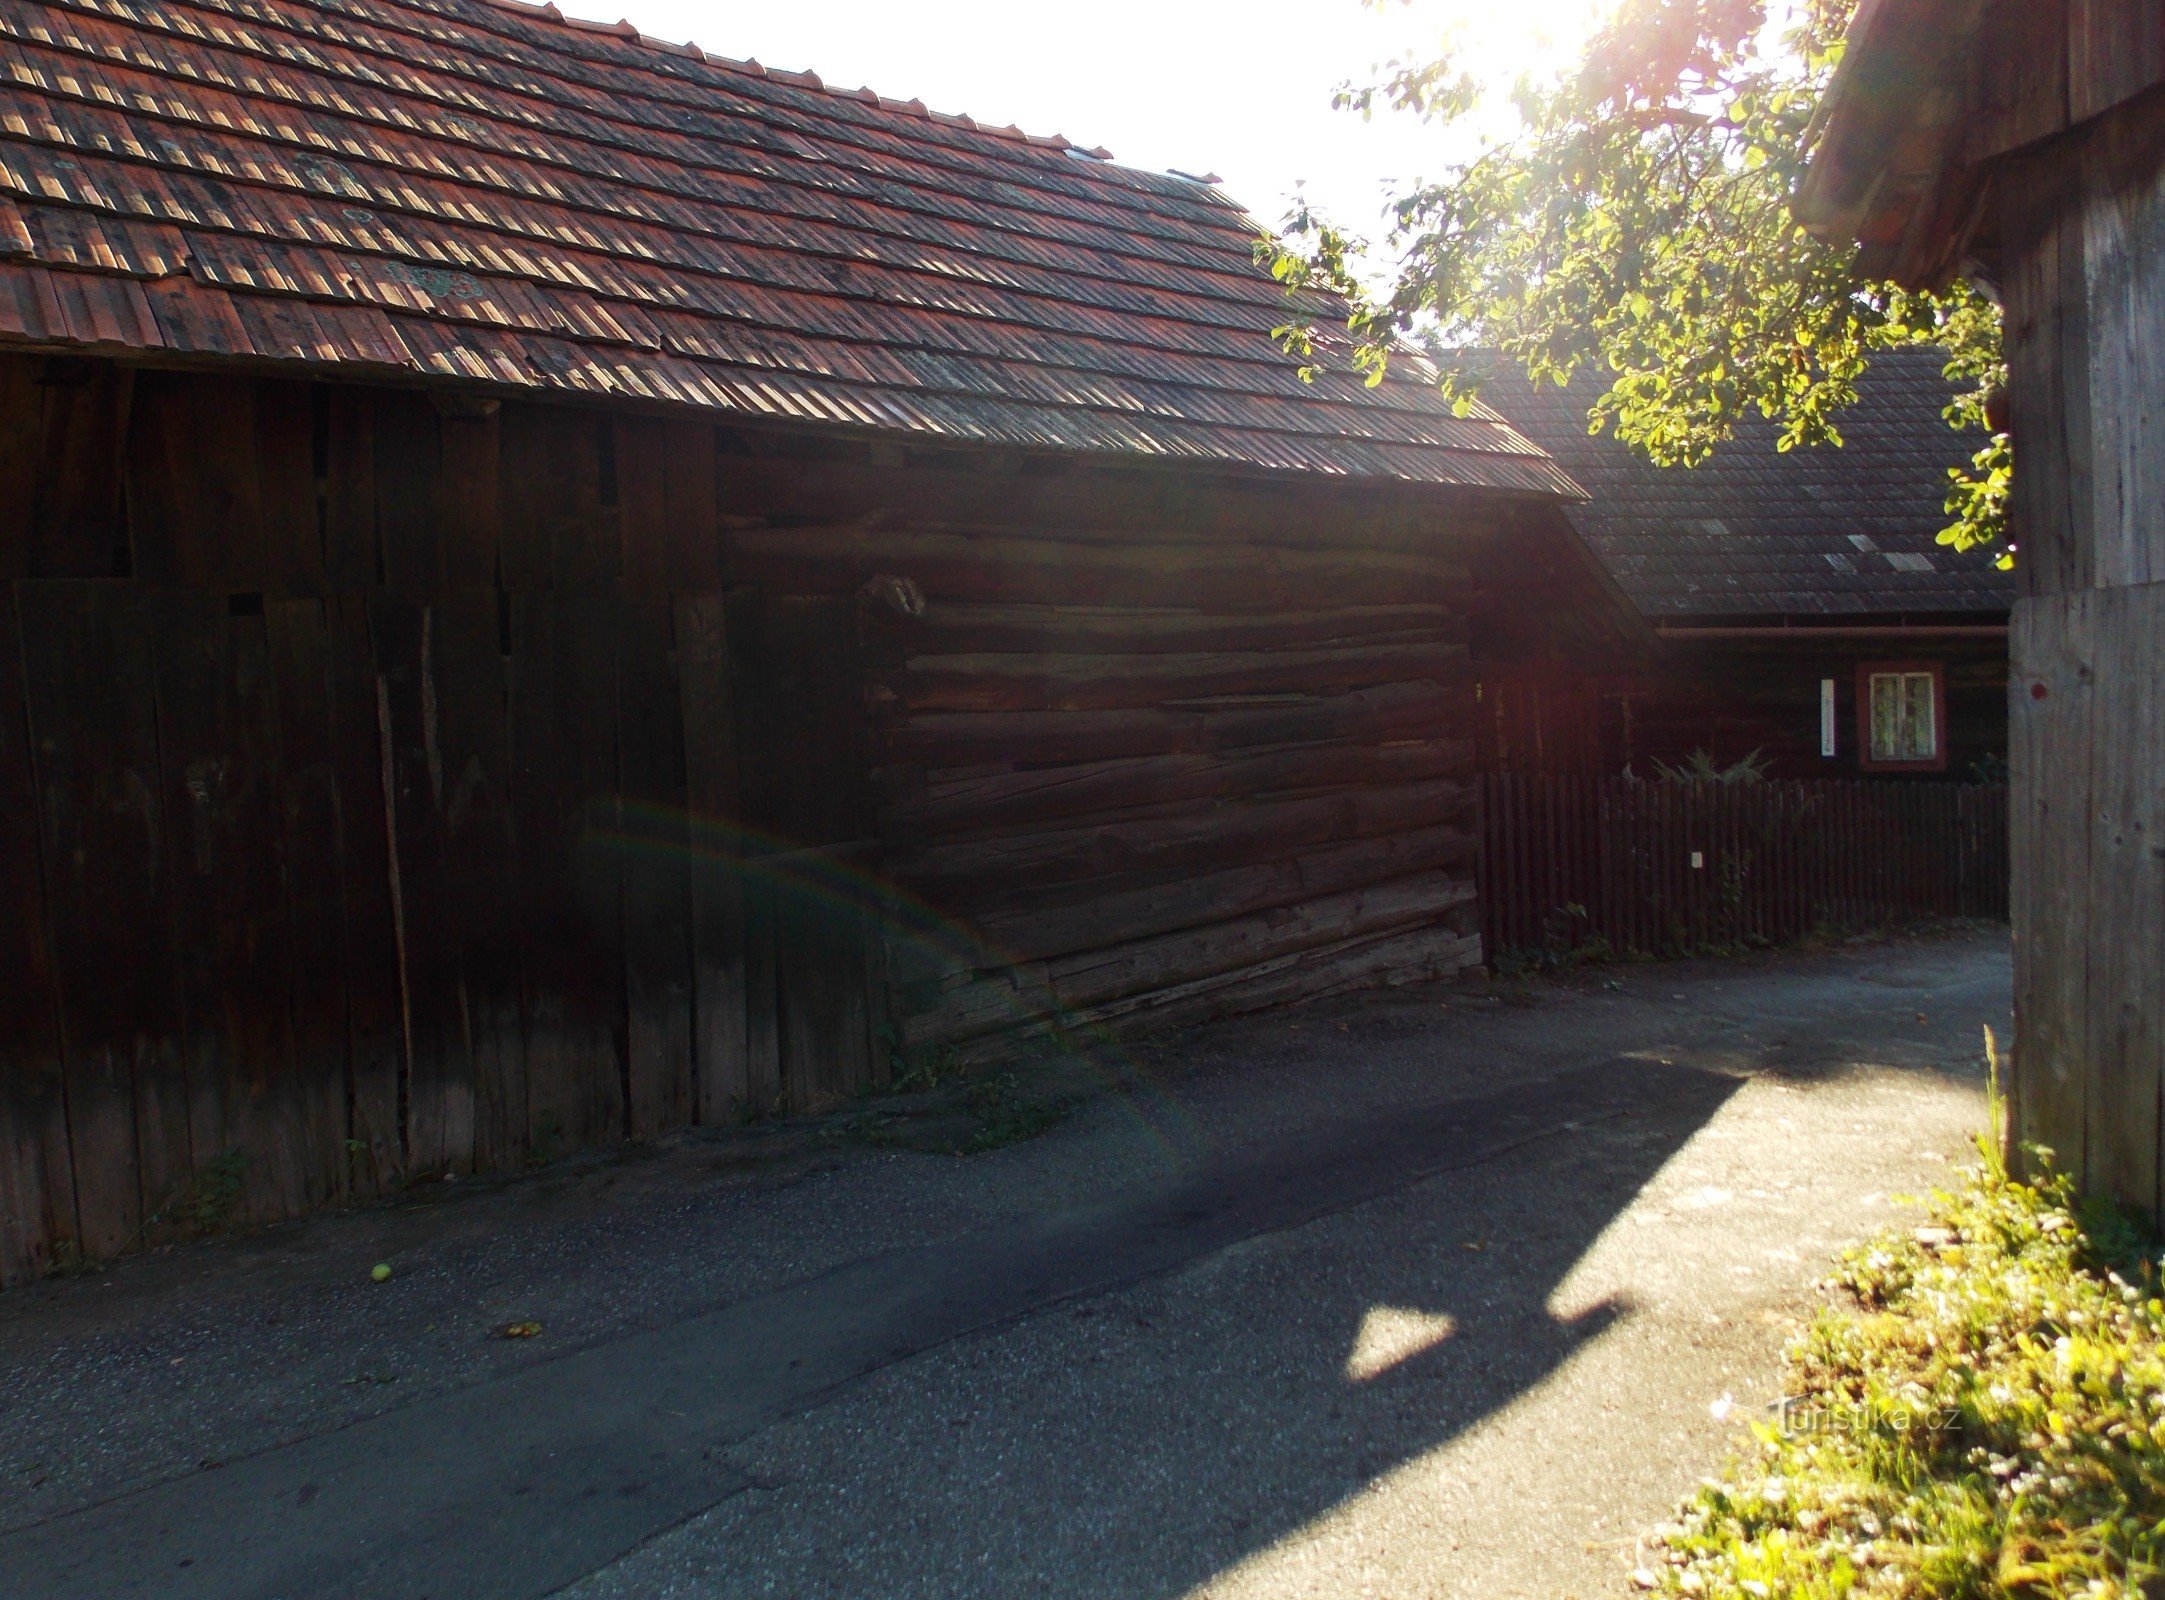 przykład architektury ludowej wołoskiej wsi Prlov